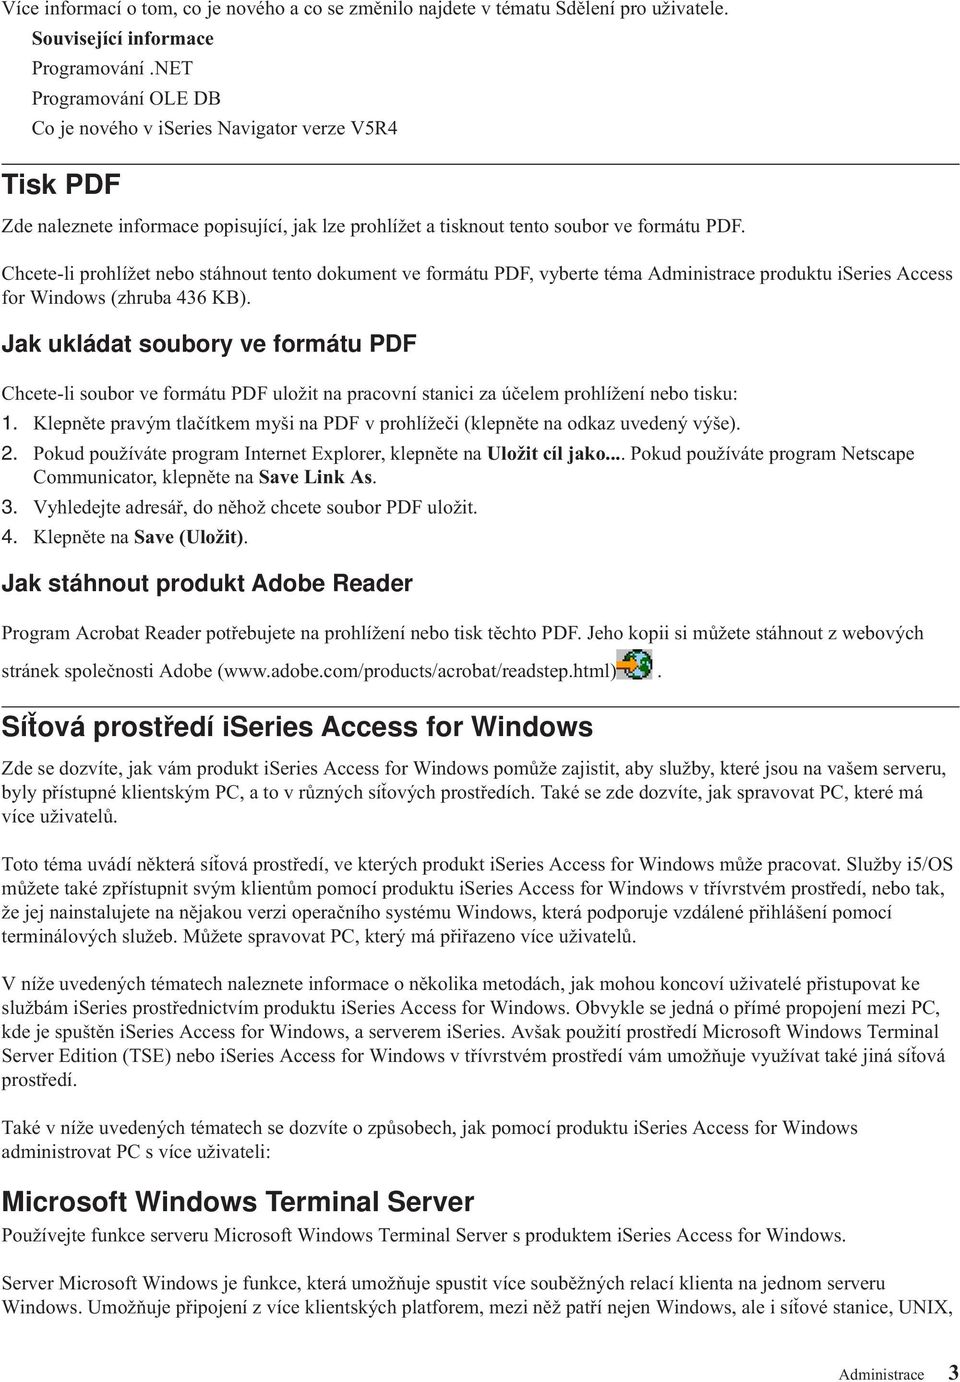 Chcete-li prohlížet nebo stáhnout tento dokument ve formátu PDF, vyberte téma Administrace produktu iseries Access for Windows (zhruba 436 KB).